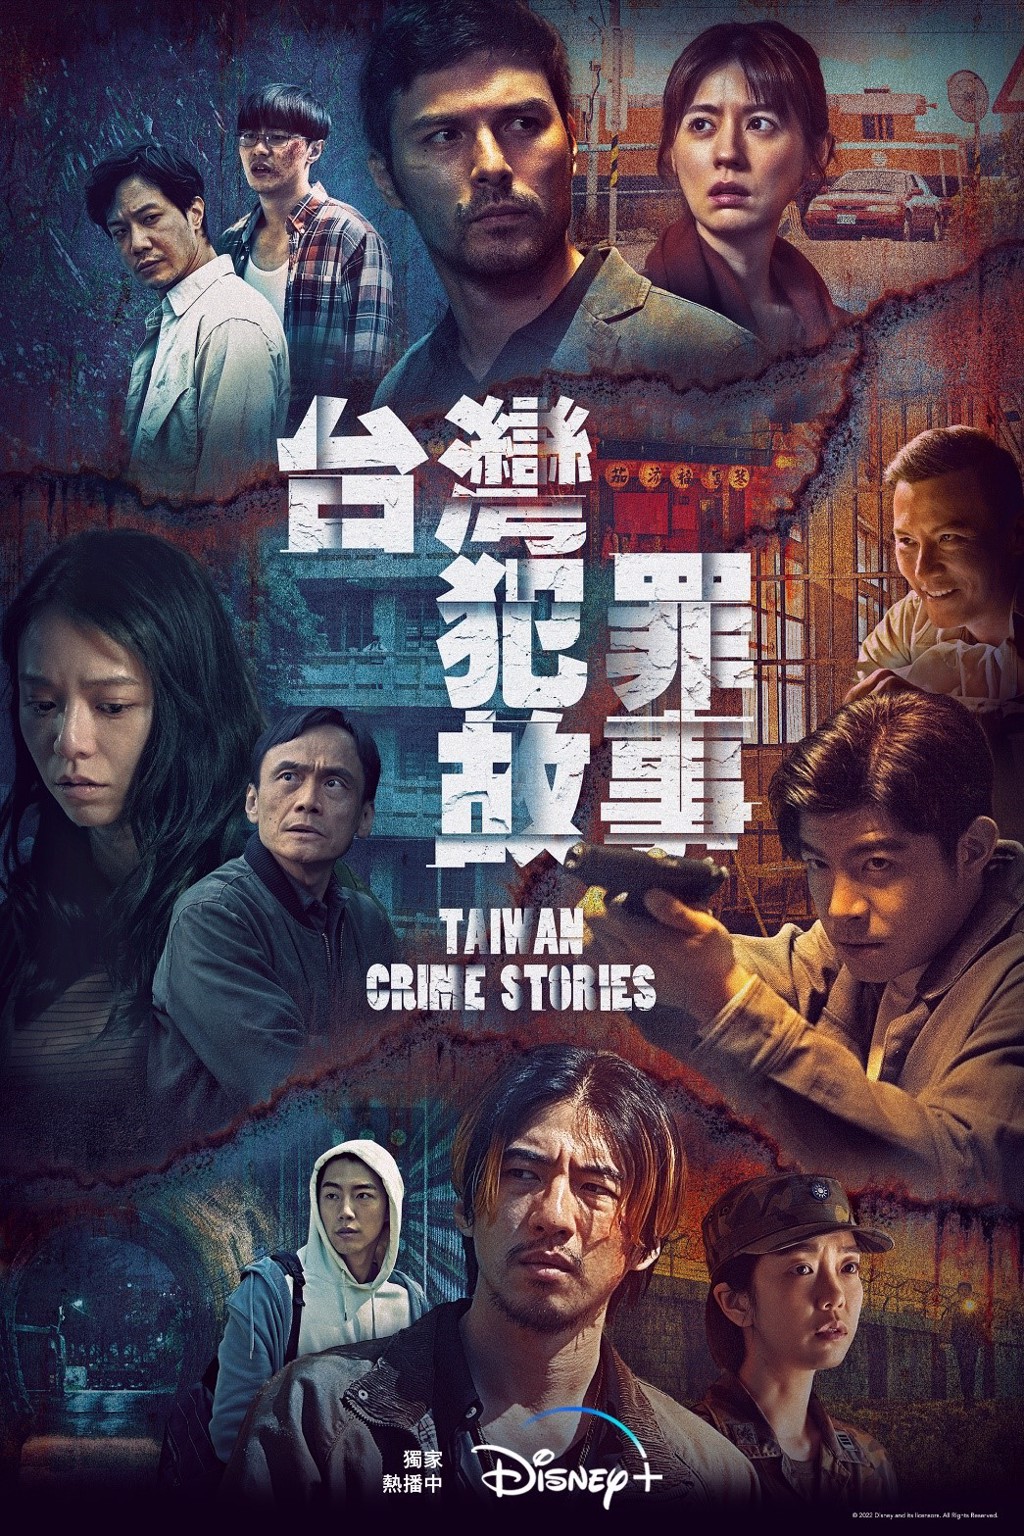 《台灣犯罪故事》以單元劇的方式改編台灣真實犯罪事件，四篇故事《出軌》、《生死困局》、《惡有引力》、《黑潮之下》，能給觀眾不同的反思。(圖: Disney+提供)